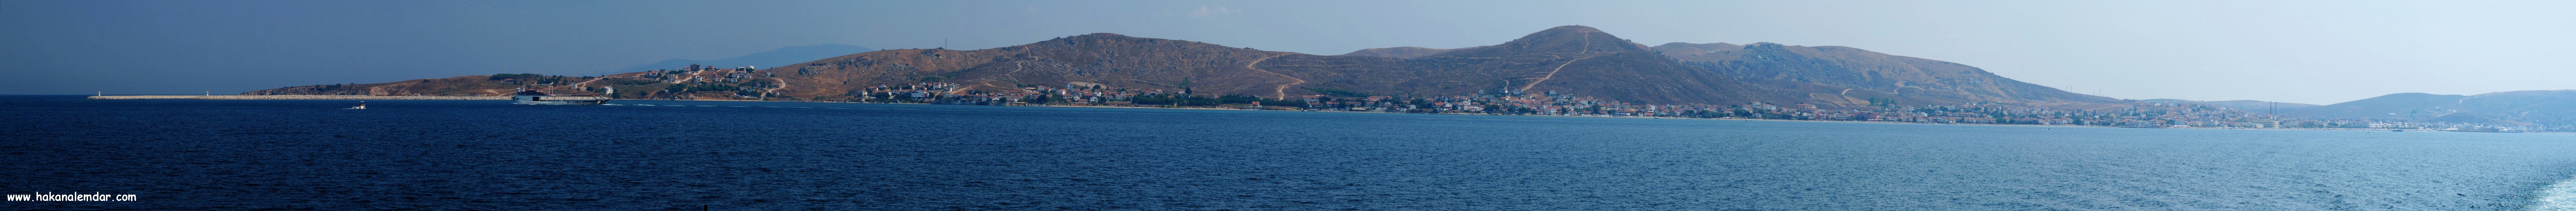 Avşa Adası Panoramaları 2011